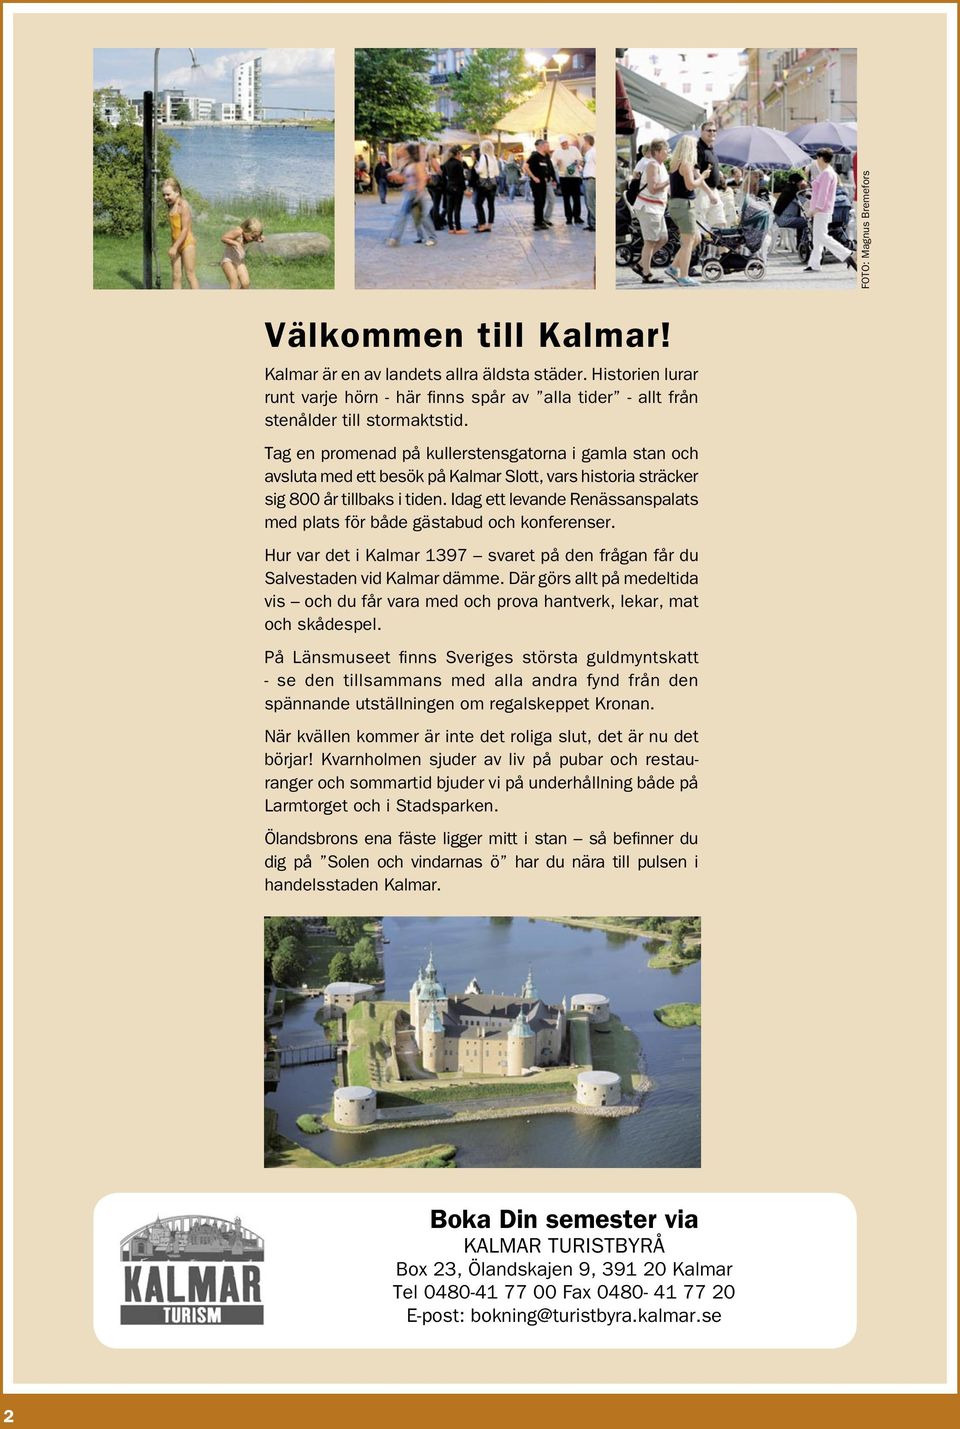 Idag ett levande Renässanspalats med plats för både gästabud och konferenser. Hur var det i Kalmar 1397 svaret på den frågan får du Salvestaden vid Kalmar dämme.